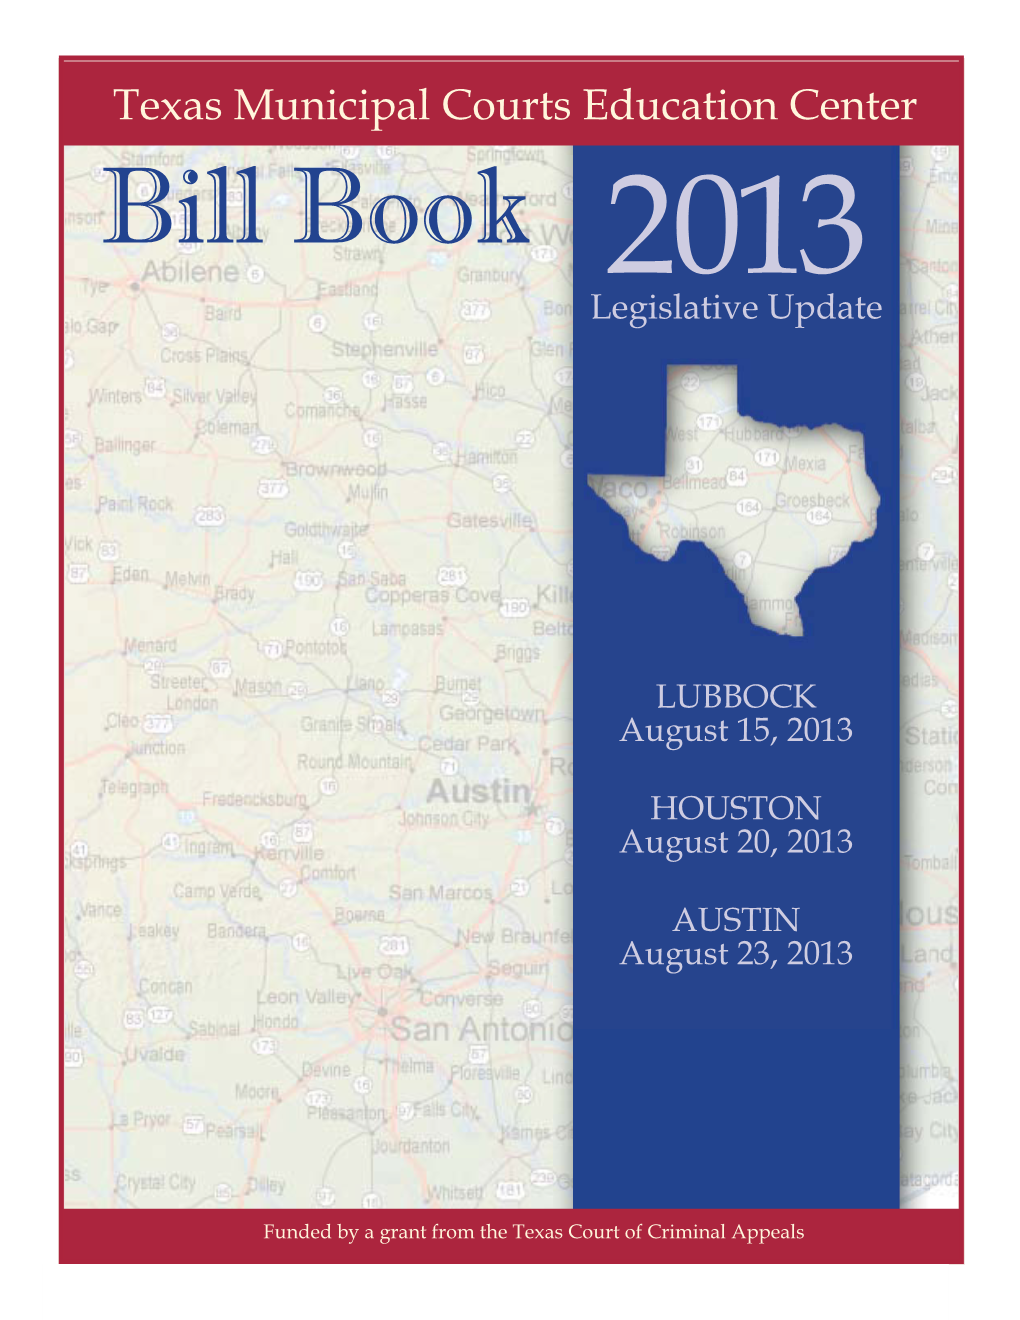 Bill Book 2013 Legislative Update